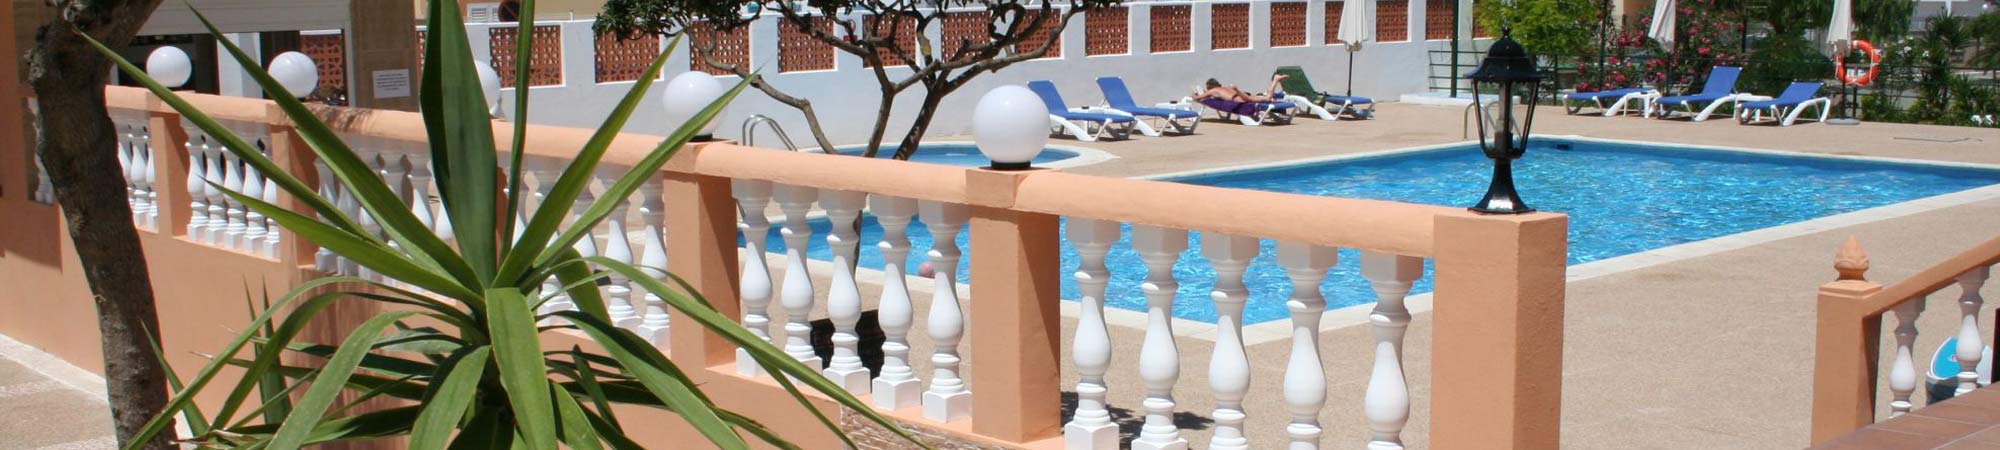 Hotel Tropicana Ibiza - Enjoy your holiday in Ibiza